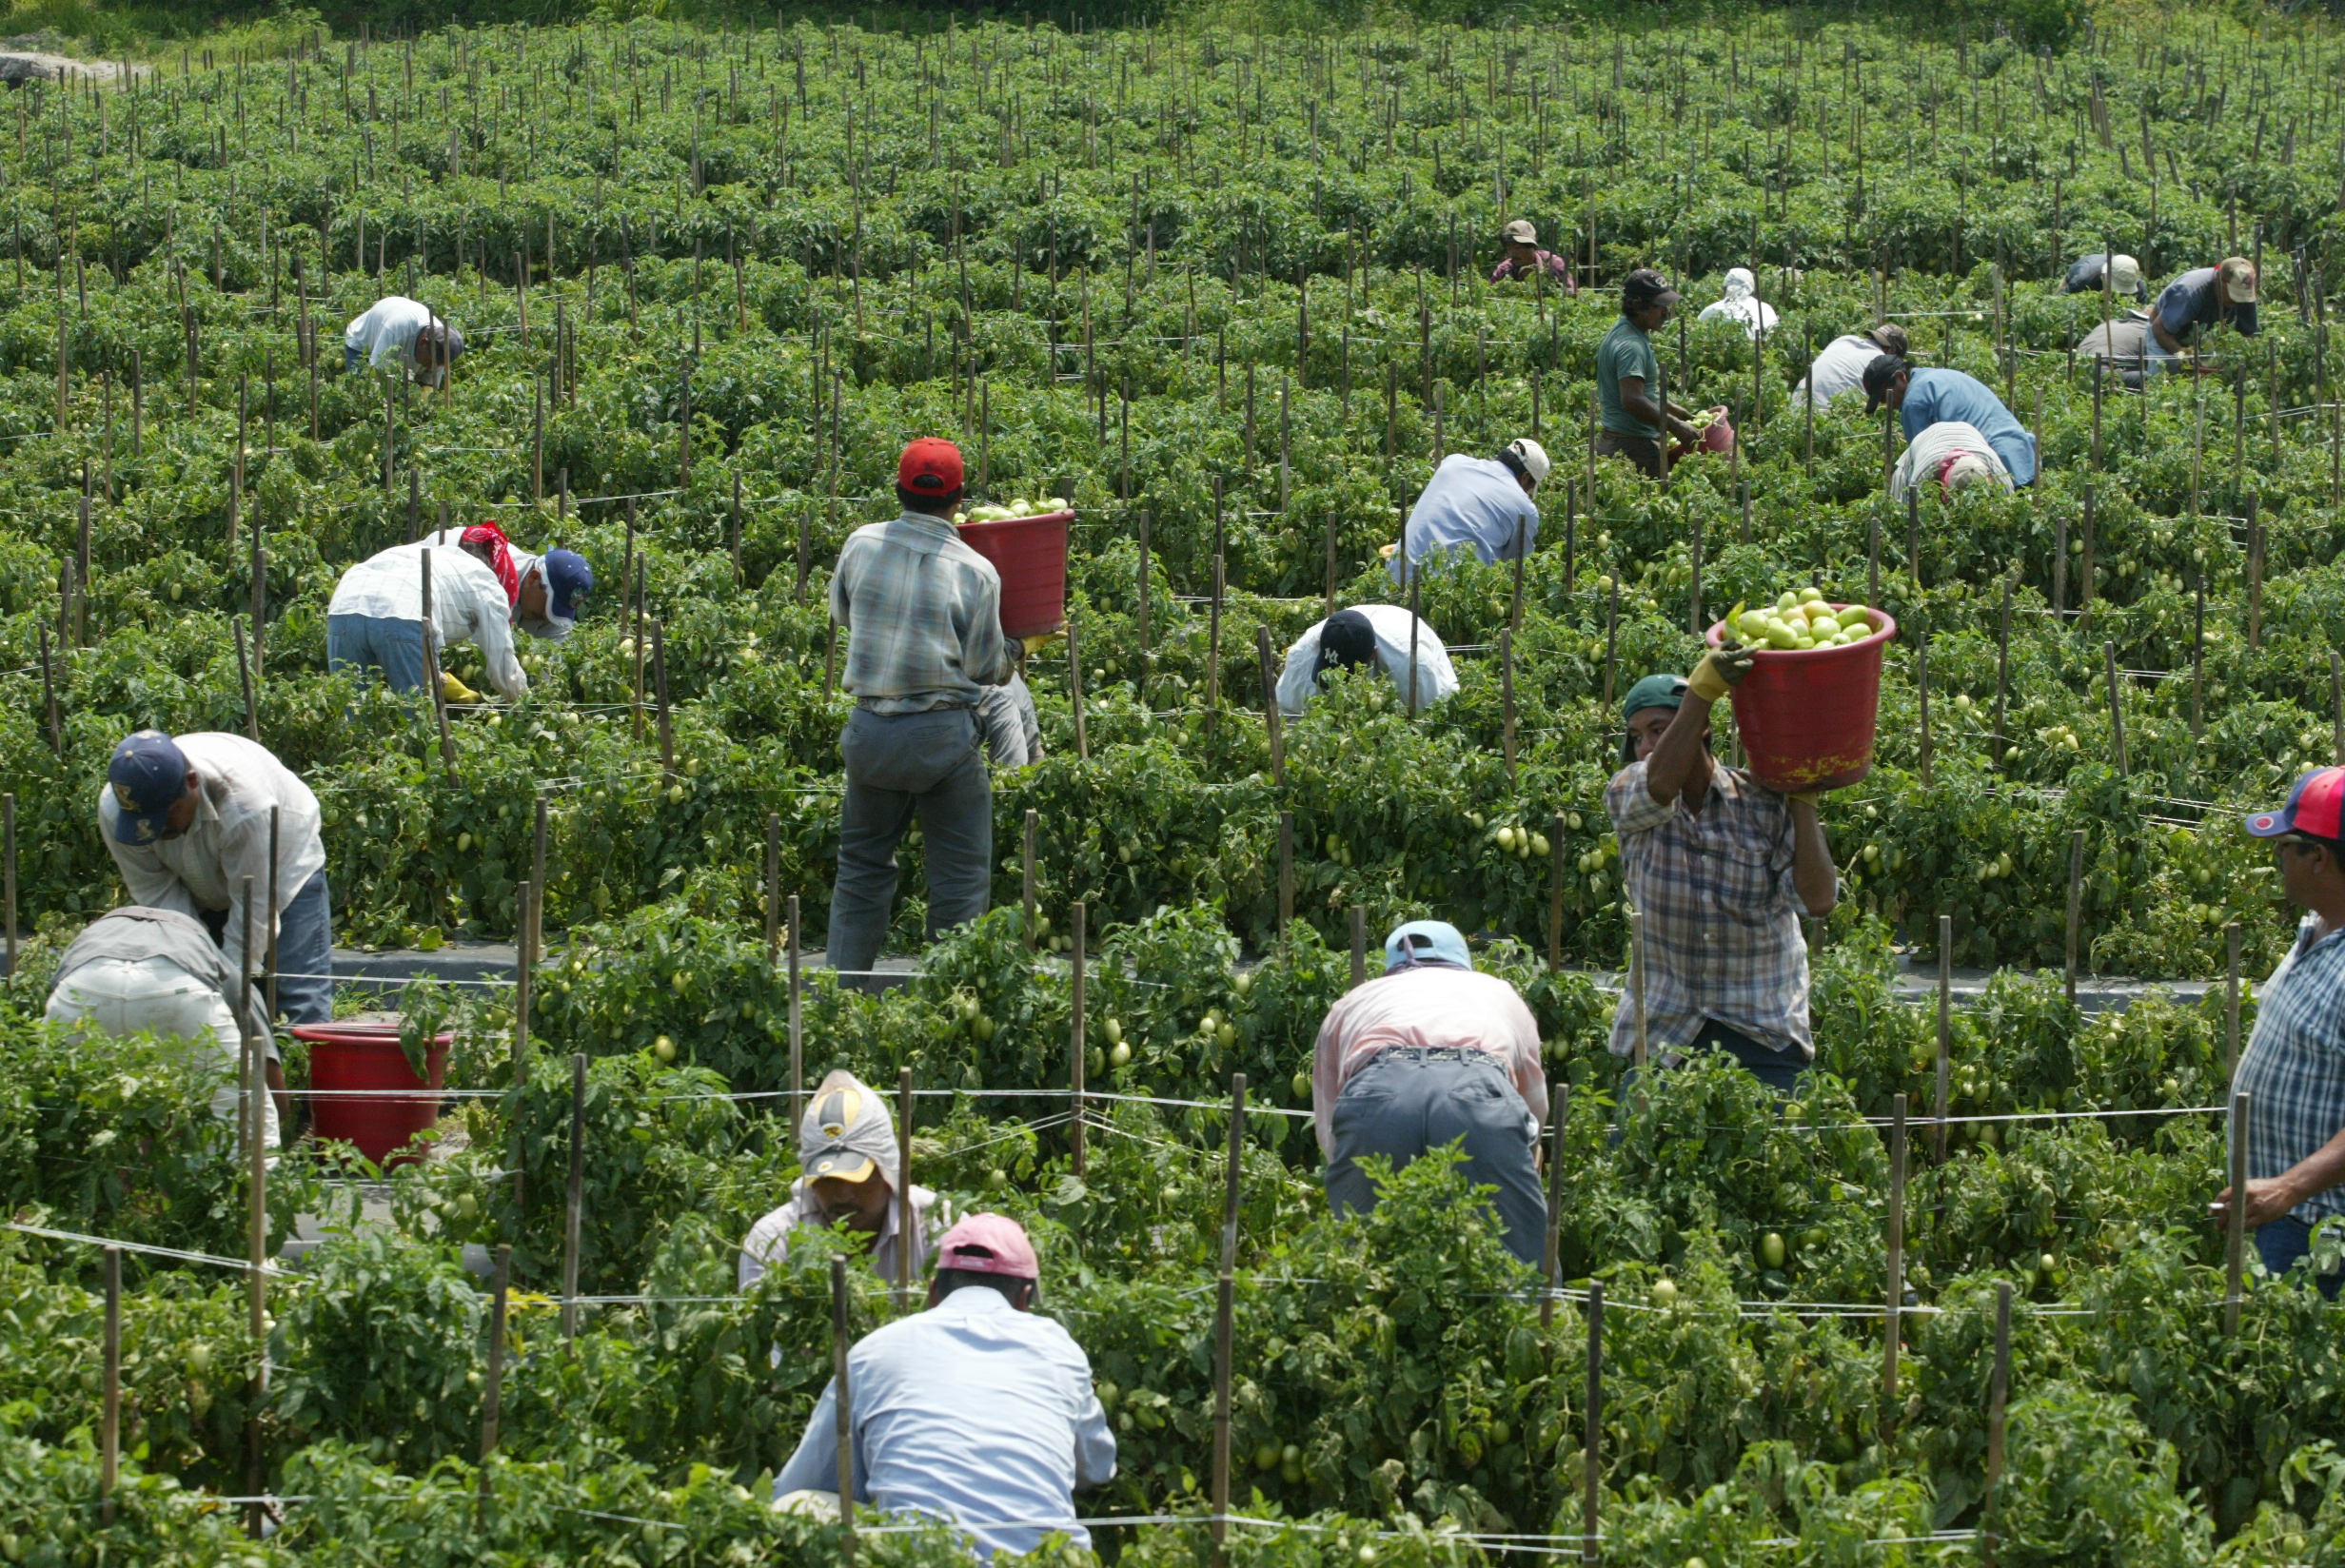 Inmigrantes laboran en una finca de tomate en Florida, EE. UU. Los trabajos agrícolas demanda una gran cantidad de mano de obra, la mayoría de la cual es compuesta por inmigrantes. (Foto Prensa Libre: Hemeroteca PL)